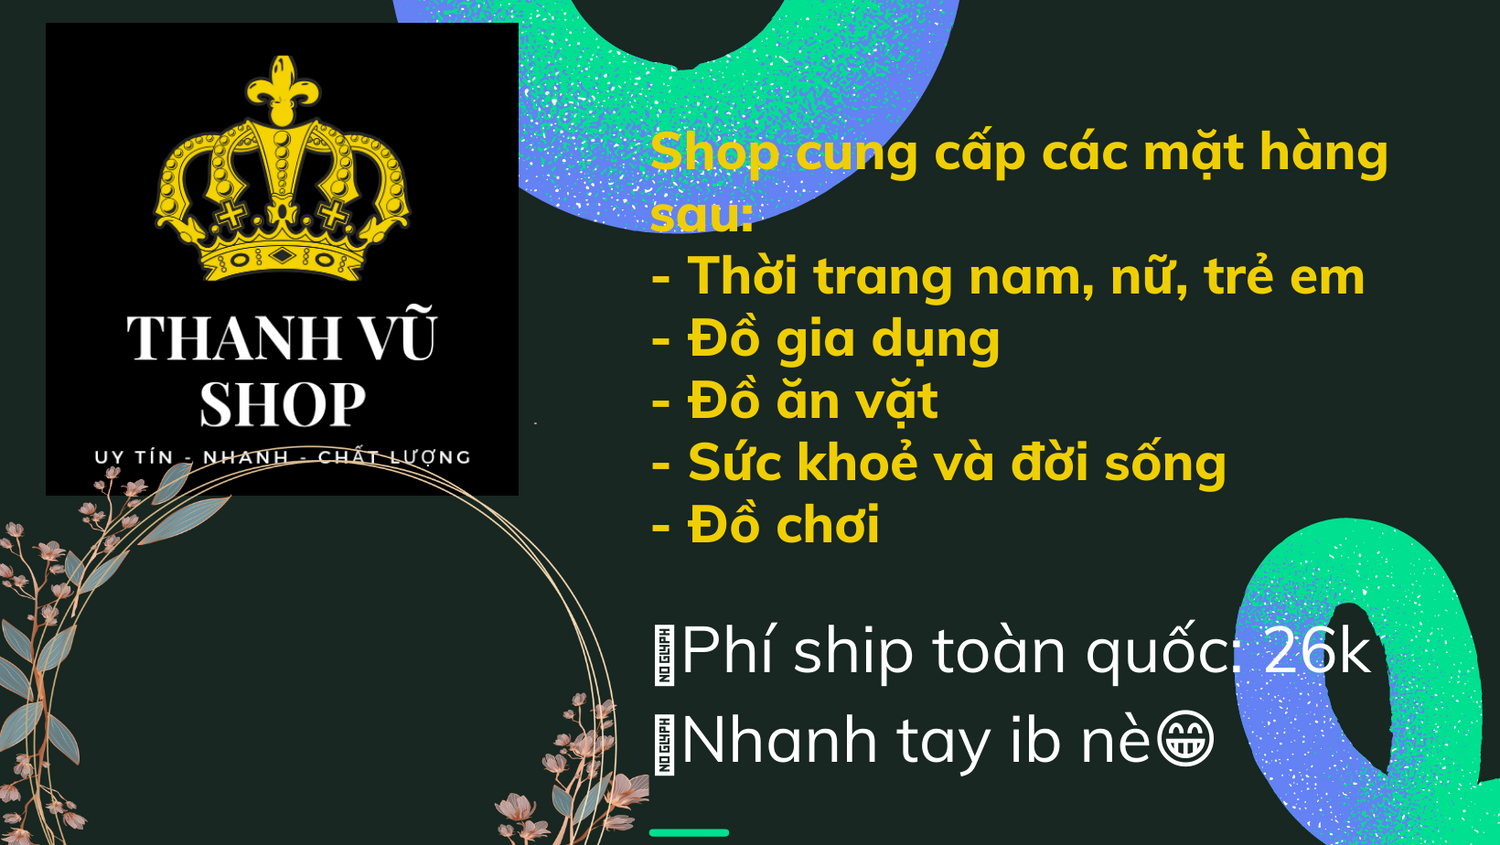 Thanh Vũ shop